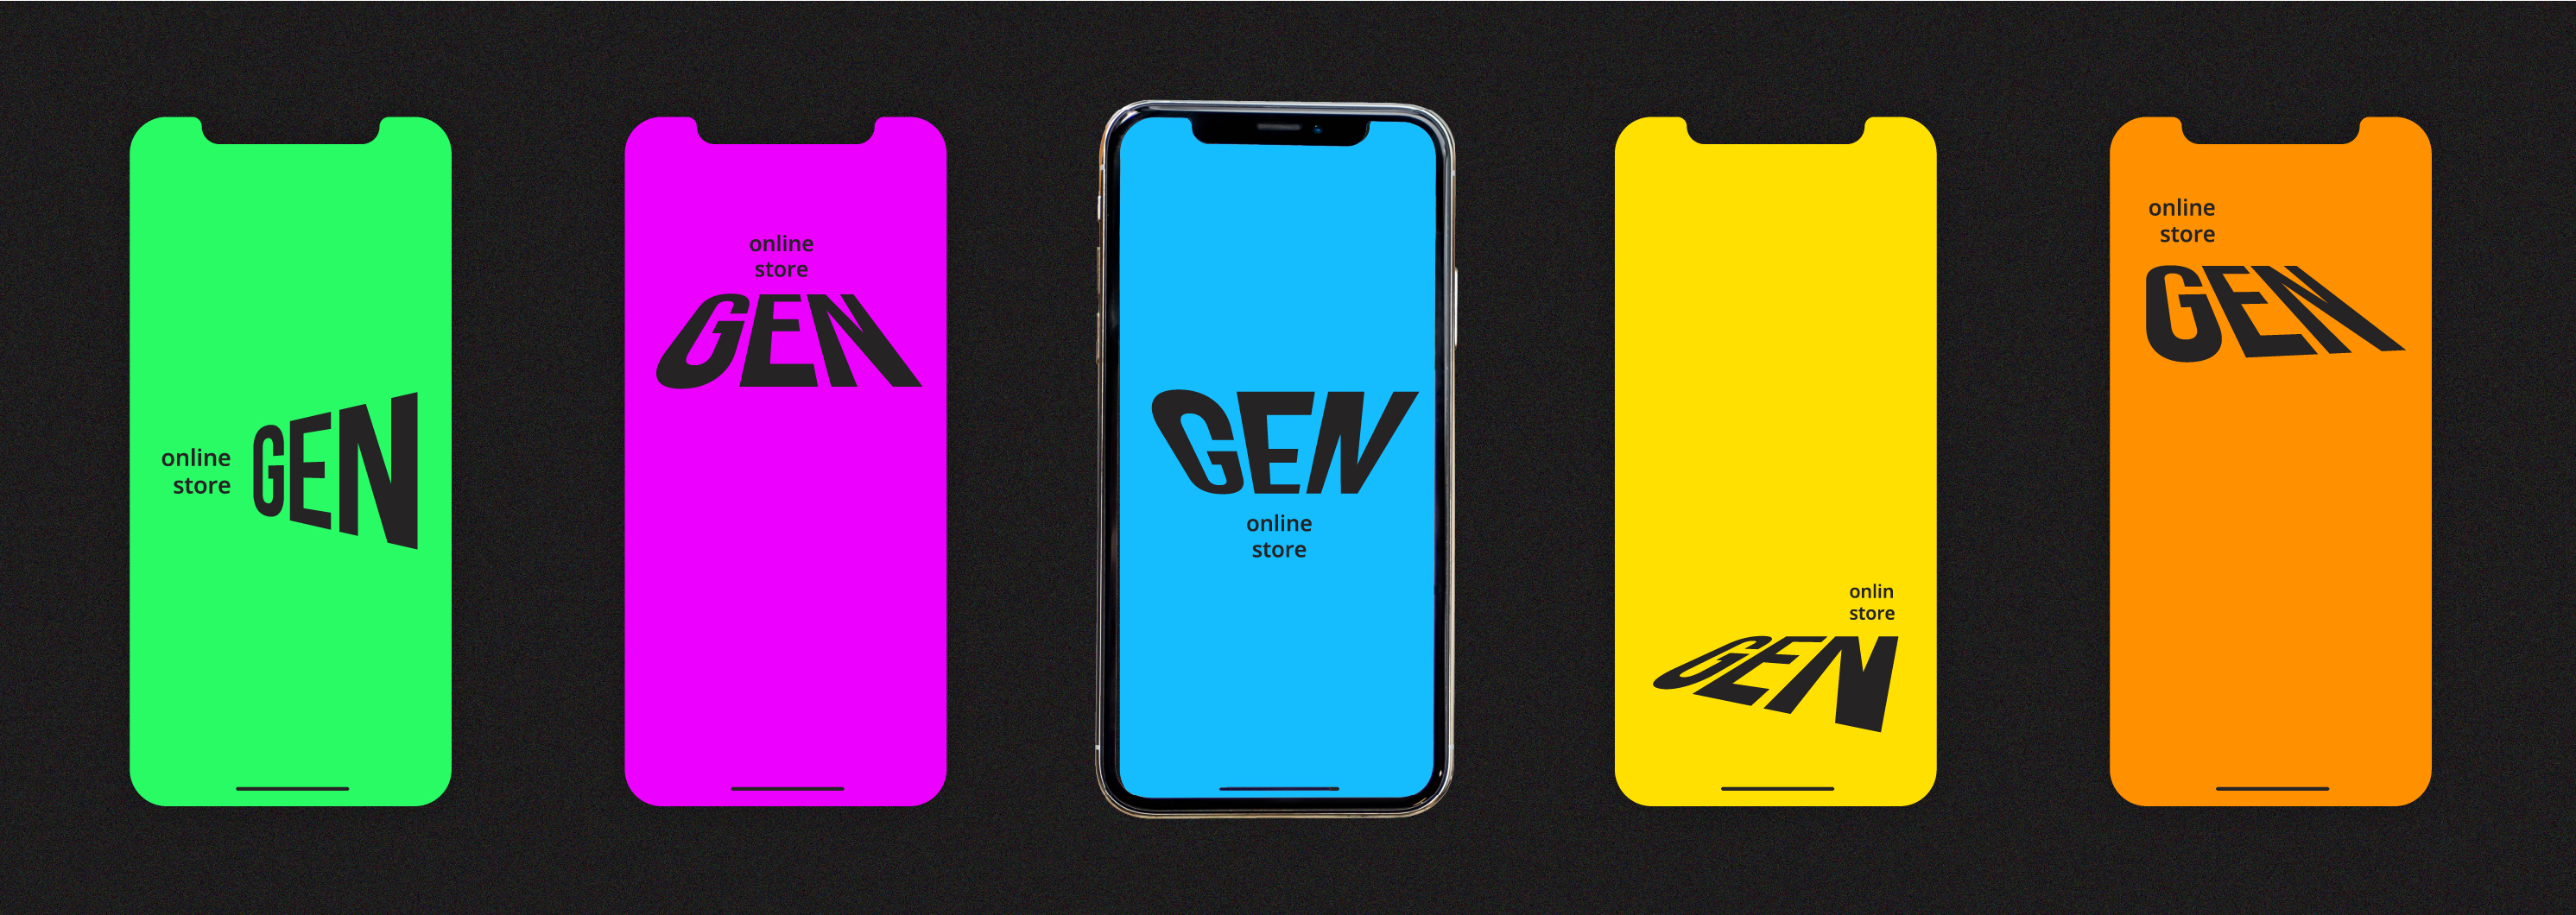 Дизайн мобильной версии сайта онлайн-магазина GEN